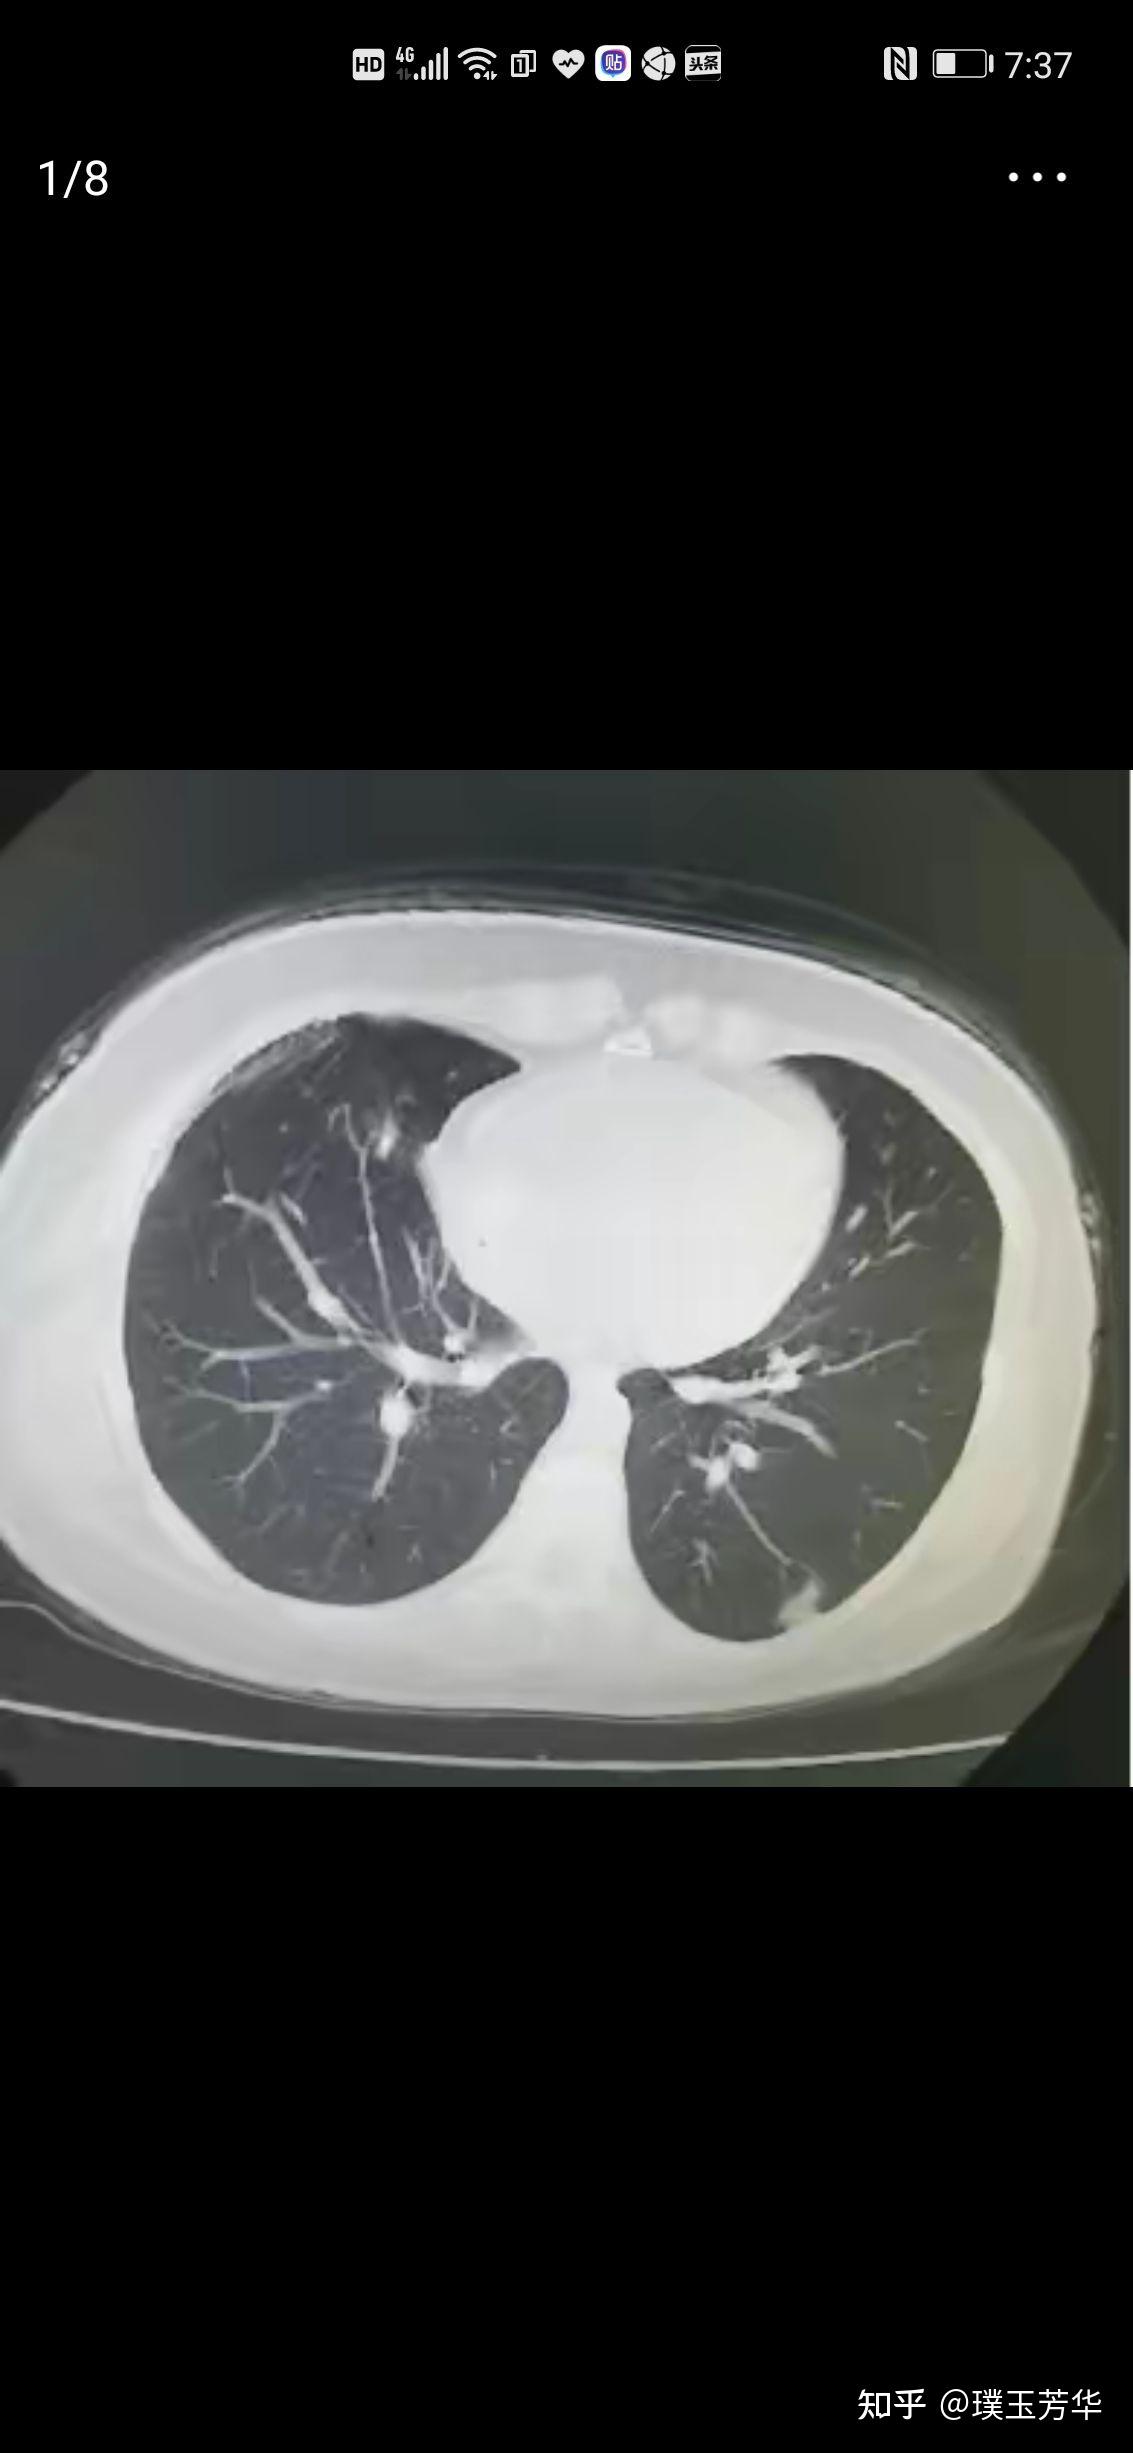 右肺磨玻璃结节肺叶切除后,左肺又出现13mm肺结节,要再做手术吗